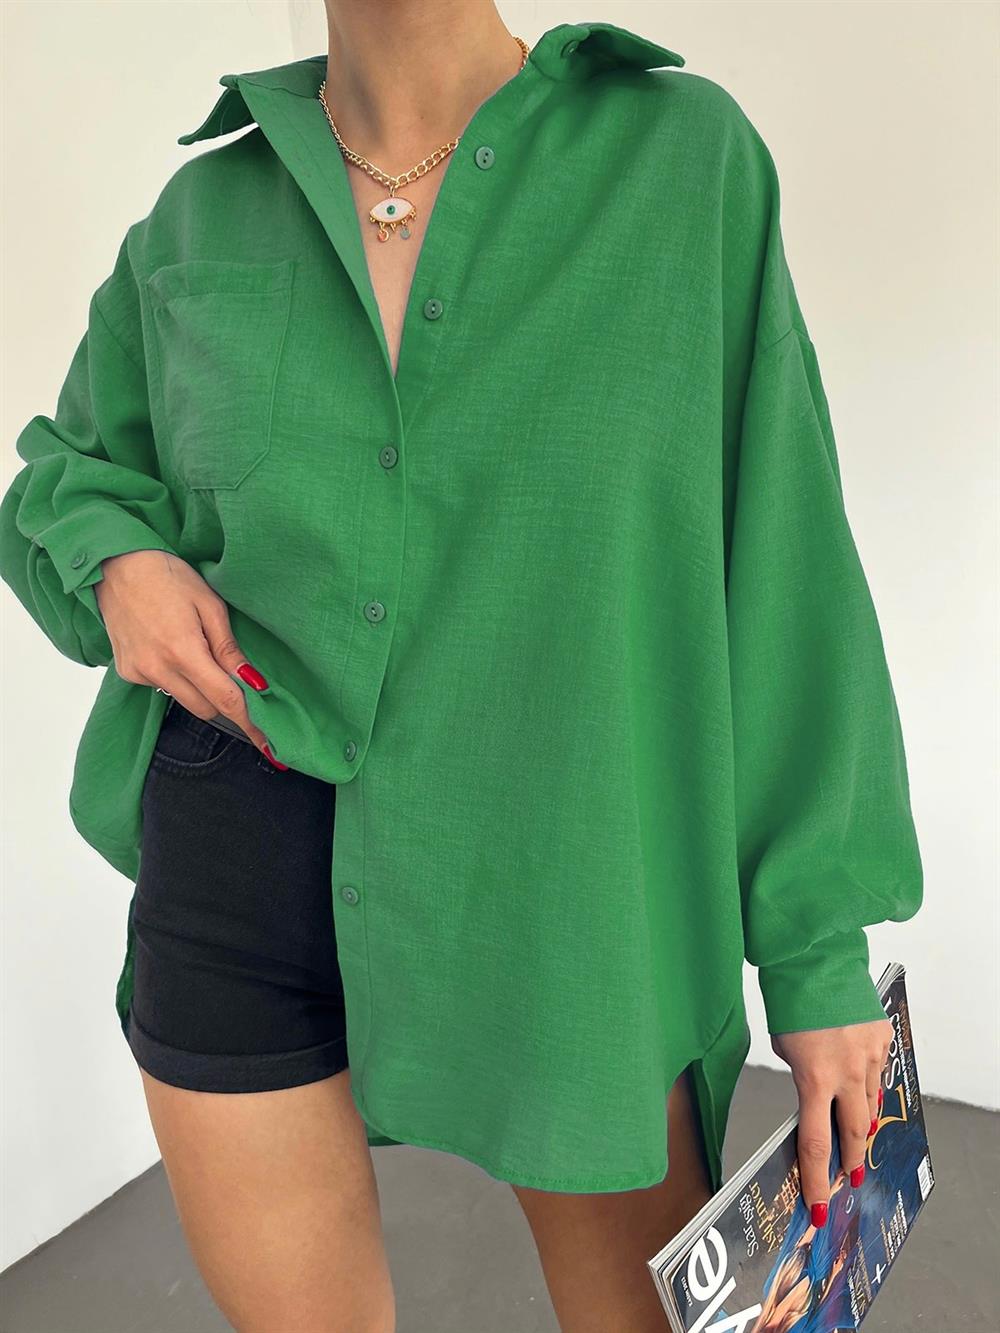 Kolu Çift Düğmeli Arkası Uzun Salaş Gömlek -Yeşil - 246-1443-R35 | ŞAMDAN  Marka Gömlek Modelleri | Kadın Tesettür Giyim - KaliteMall.com